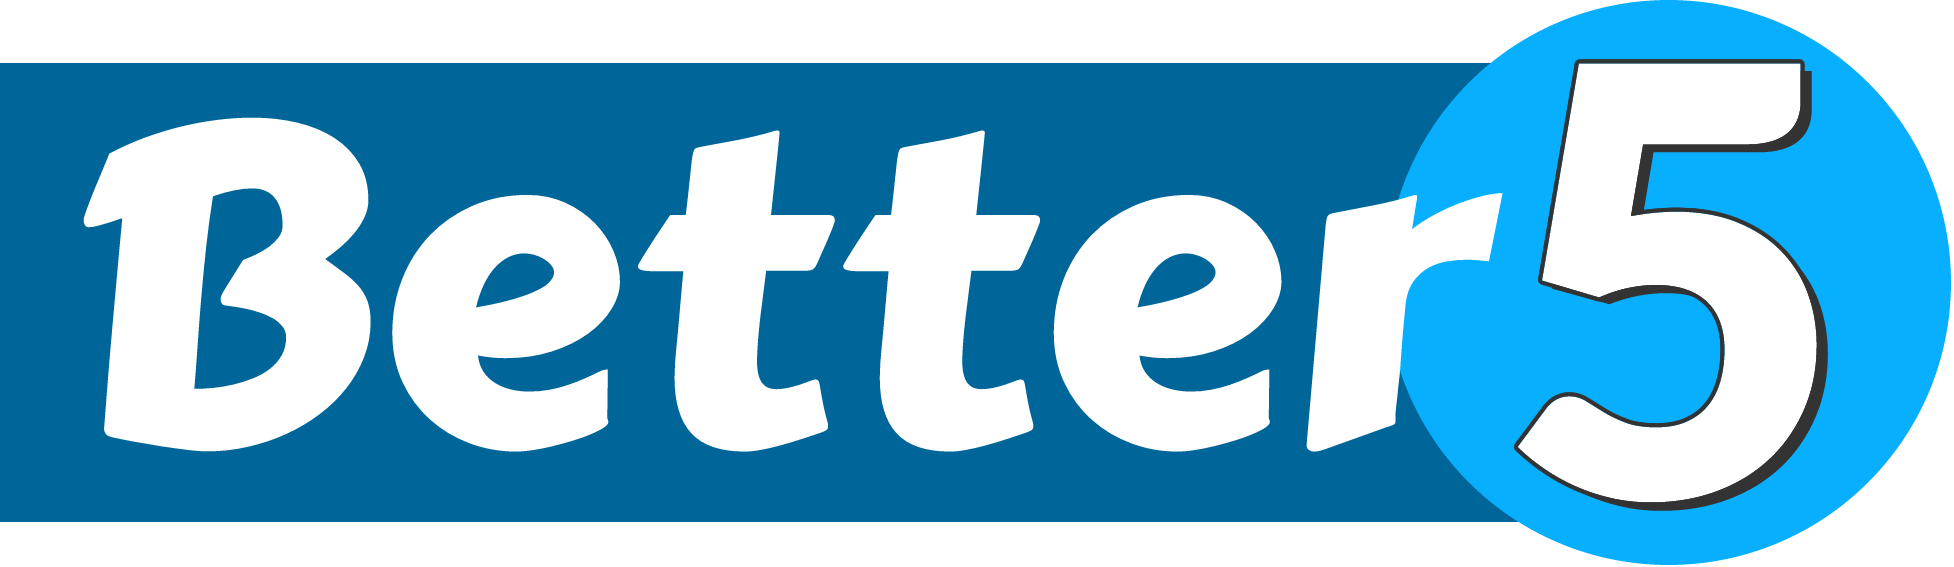 Better5 logo